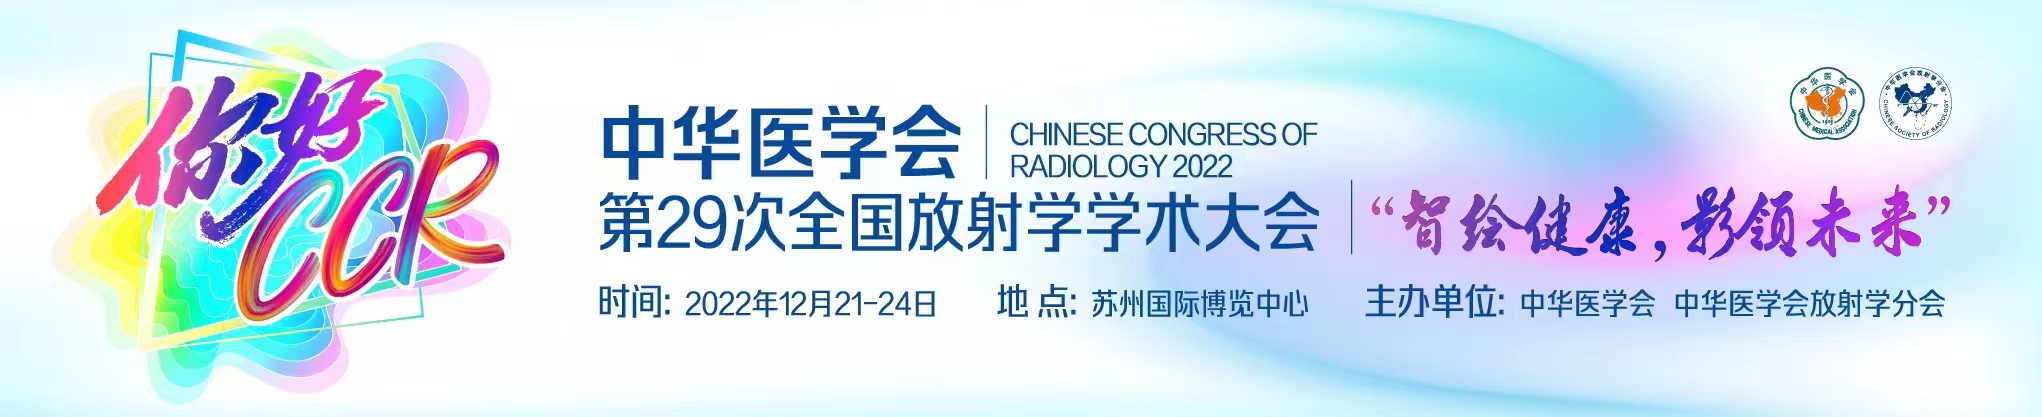 中华医学会第29次全国放射学学术大会(CCR2022)